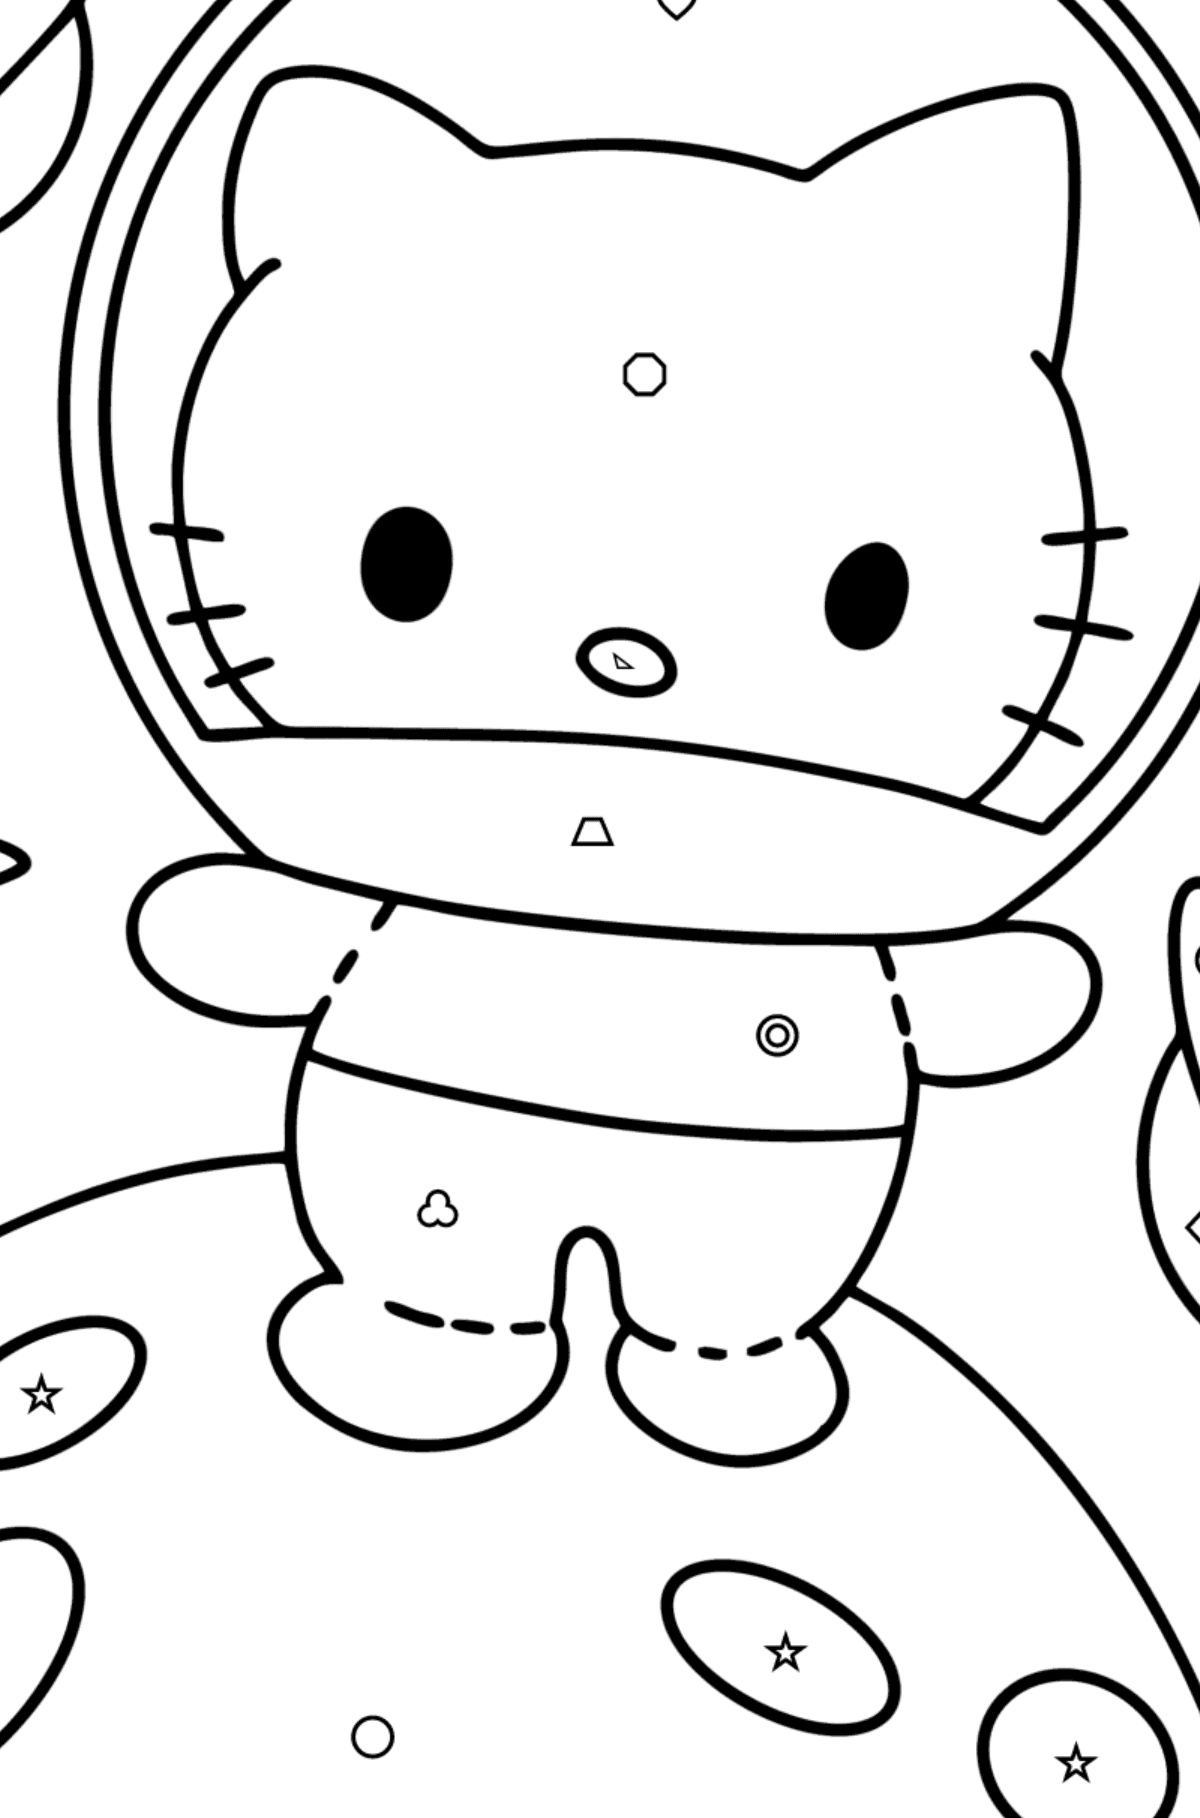 Boyama sayfası Hello Kitty astronot - Geometrik Şekillerle Boyama çocuklar için